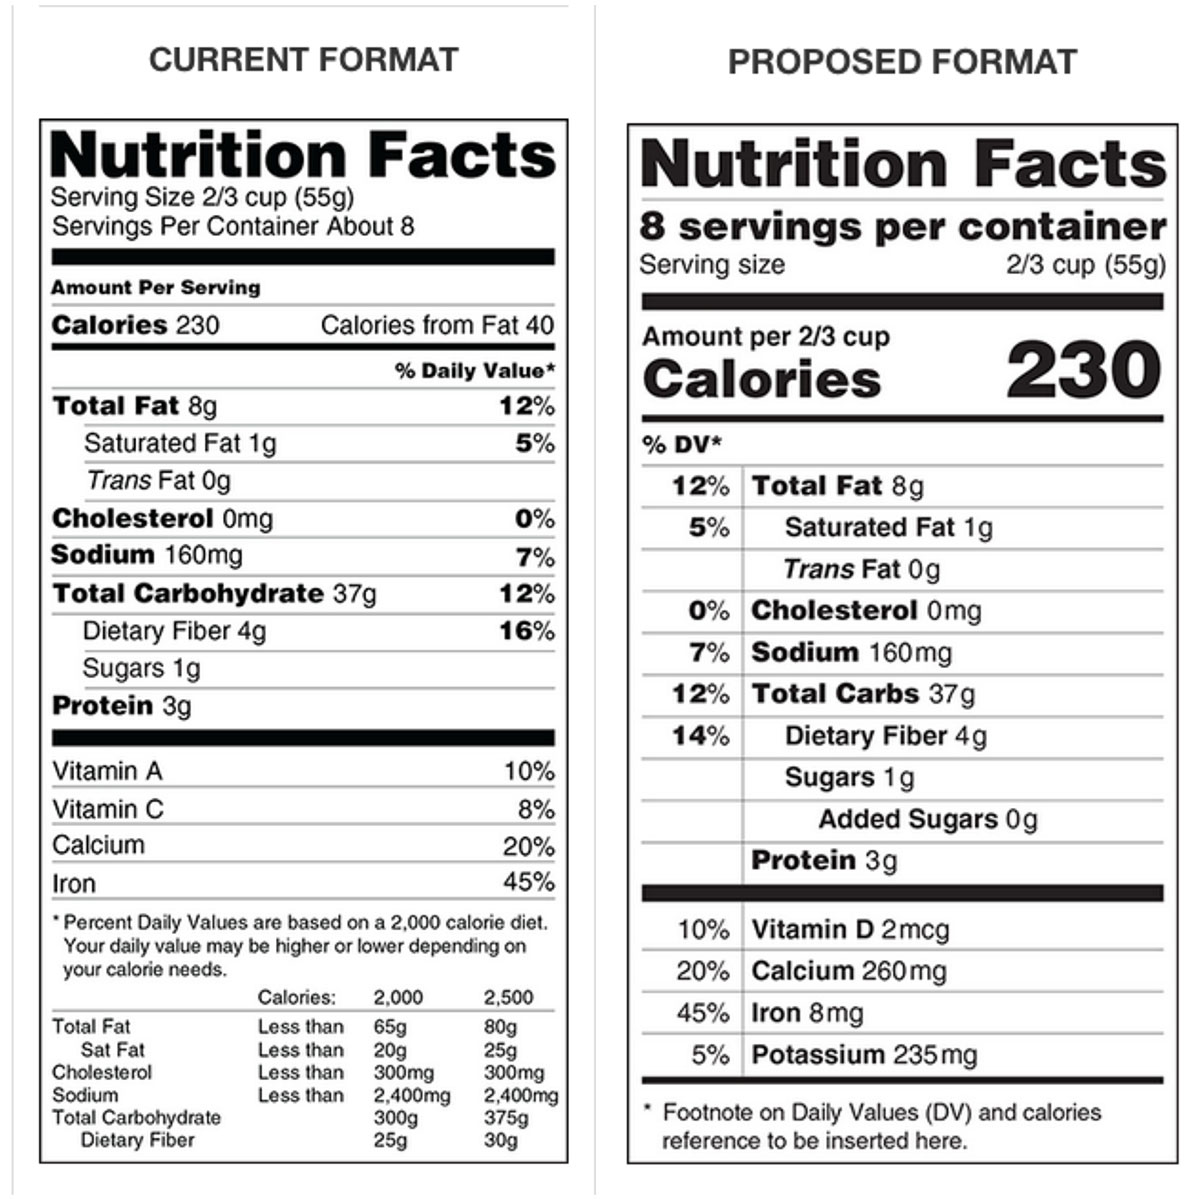 Food labels via the FDA